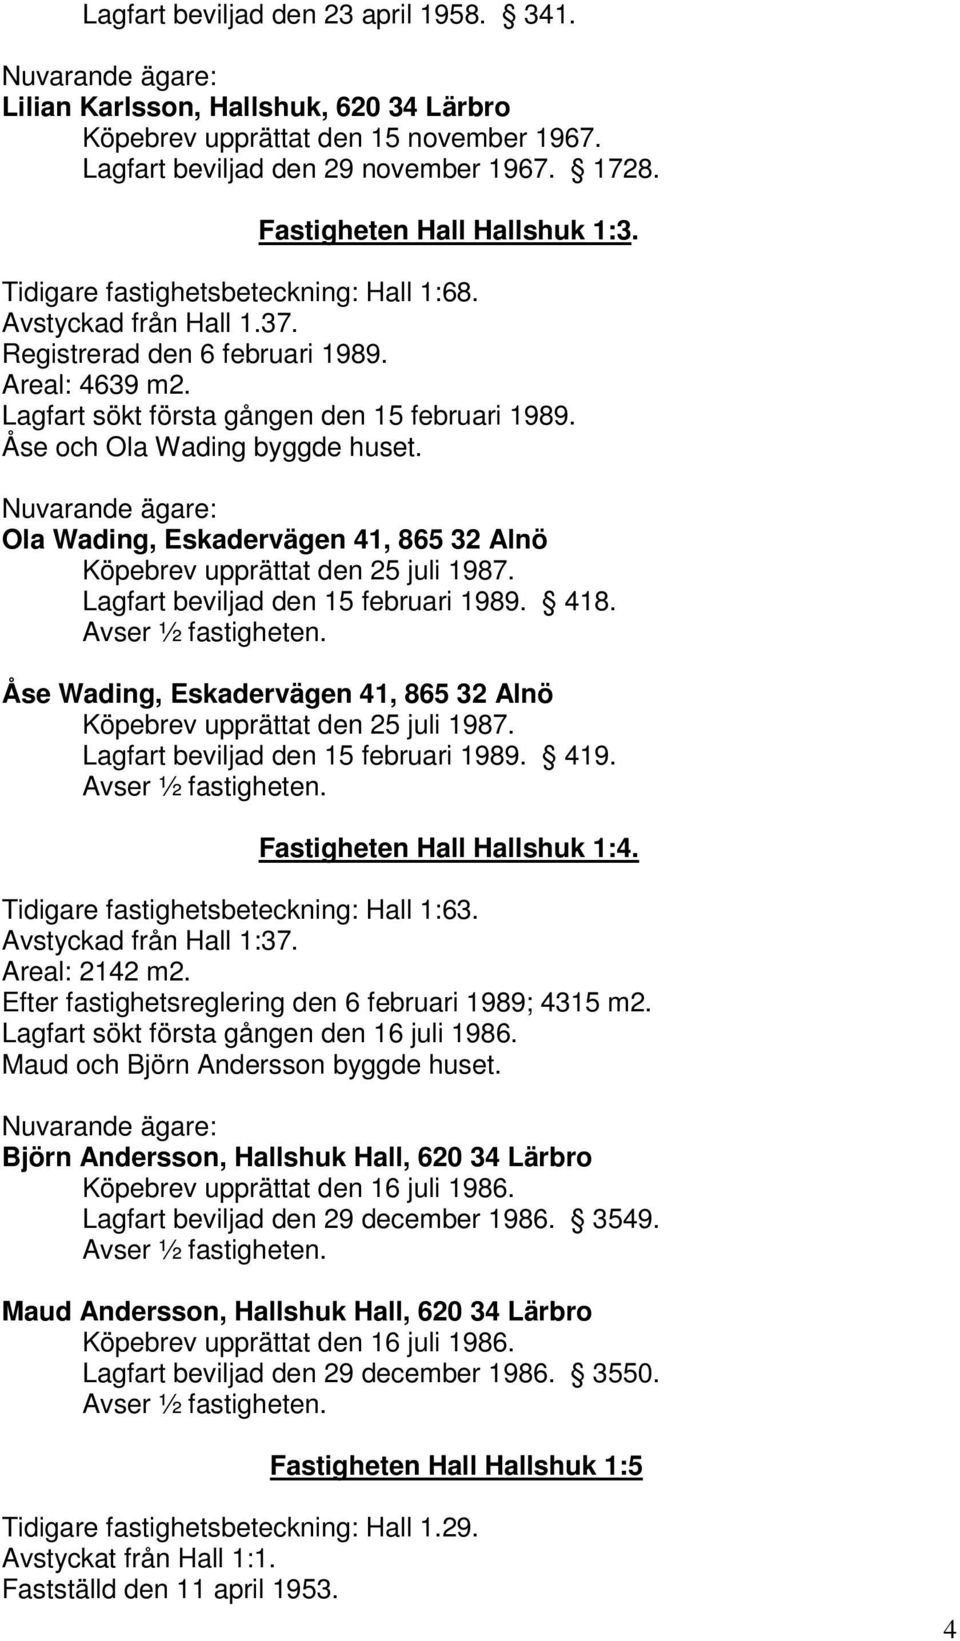 Ola Wading, Eskadervägen 41, 865 32 Alnö Köpebrev upprättat den 25 juli 1987. Lagfart beviljad den 15 februari 1989. 418. Åse Wading, Eskadervägen 41, 865 32 Alnö Köpebrev upprättat den 25 juli 1987.